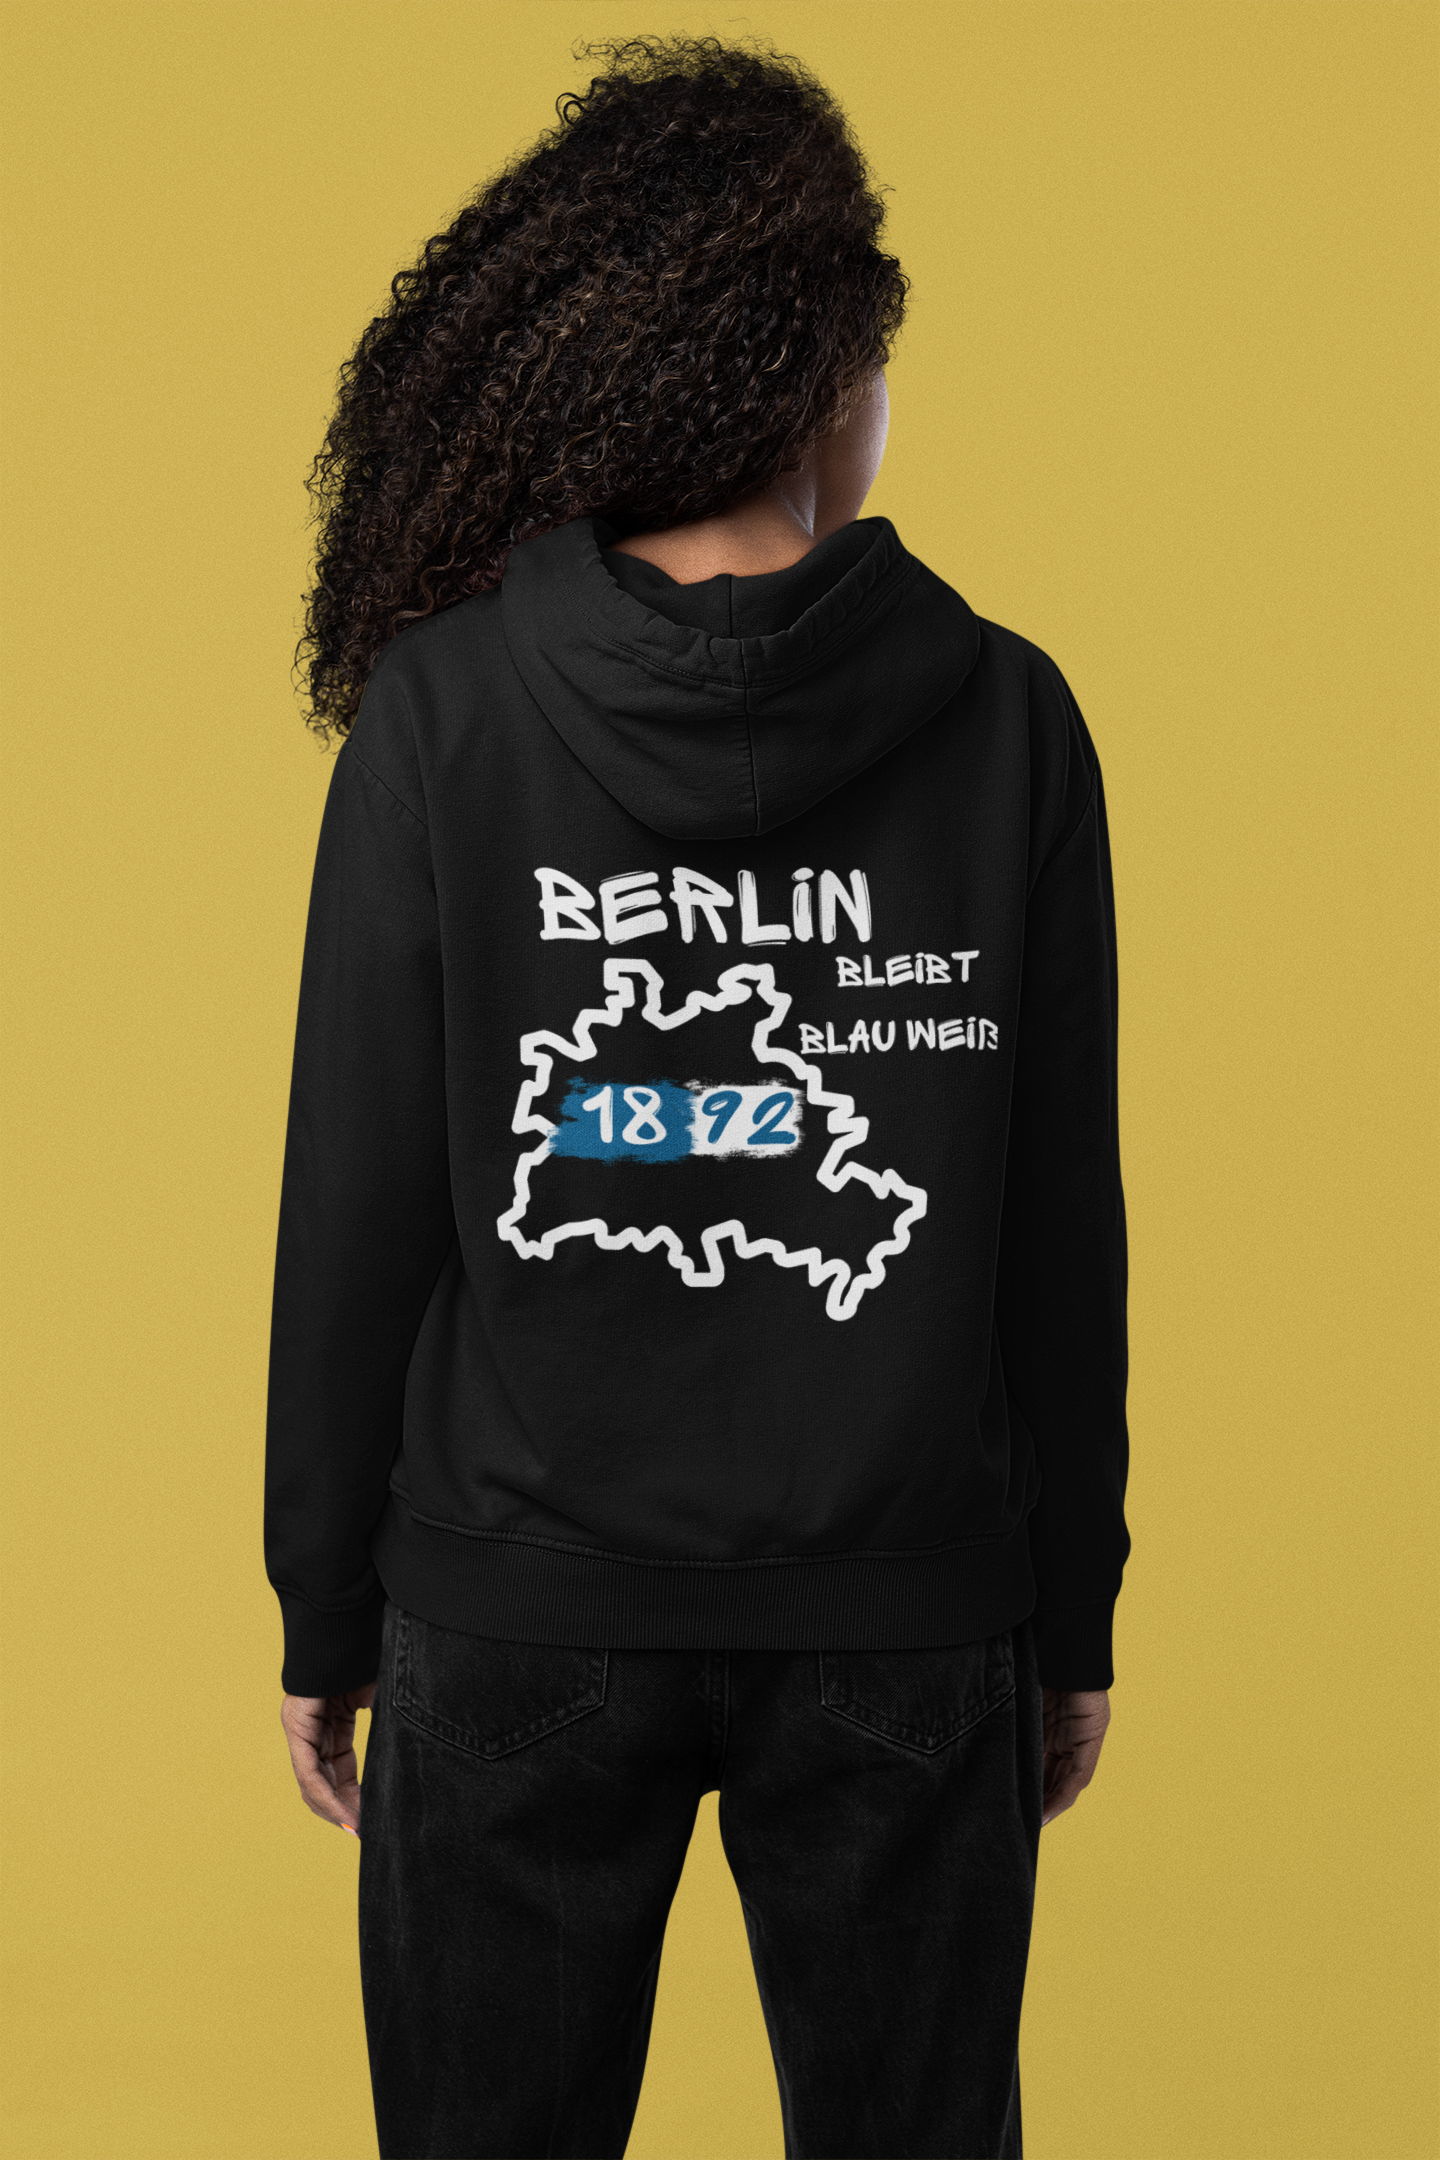 Unisex Hoodie " Berlin bleibt Blau-Weiss"